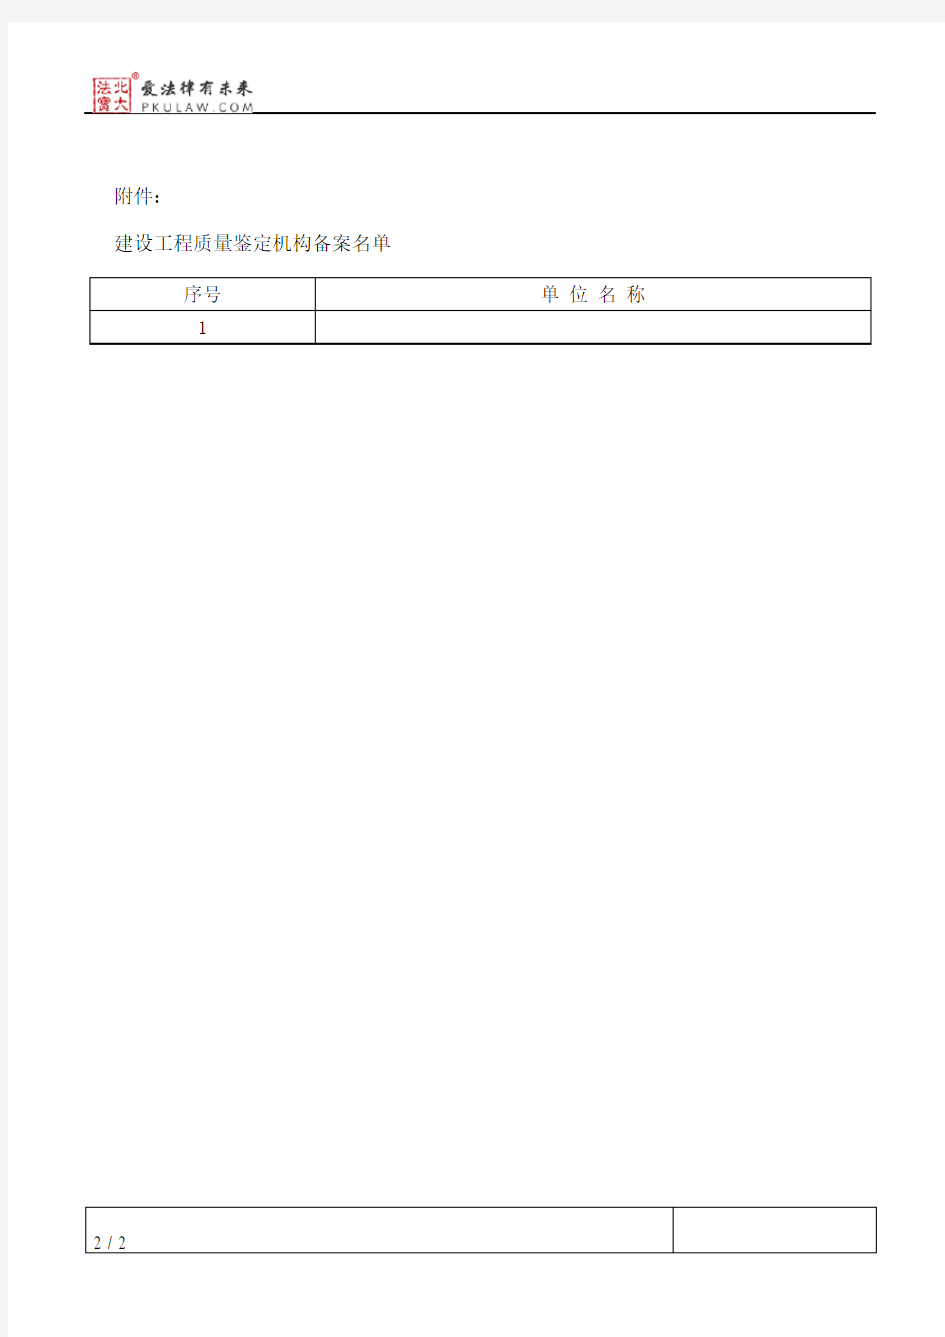 黑龙江省建设厅关于公布建设工程质量鉴定机构备案结果的通知